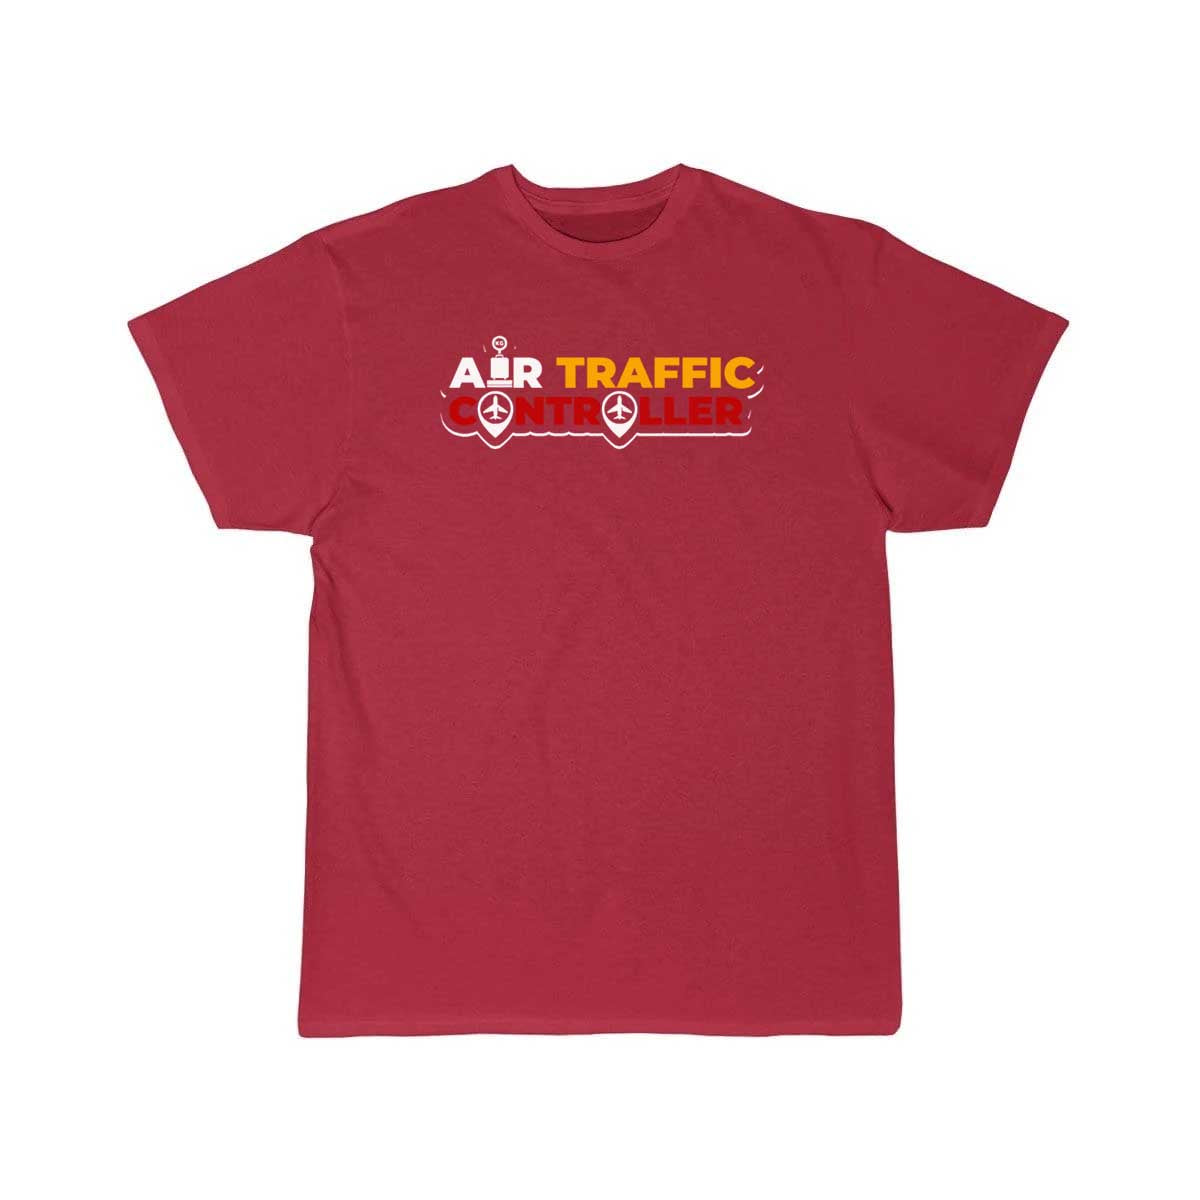 Air traffic control T-shirt & gift air traffic contol T-SHIRT THE AV8R